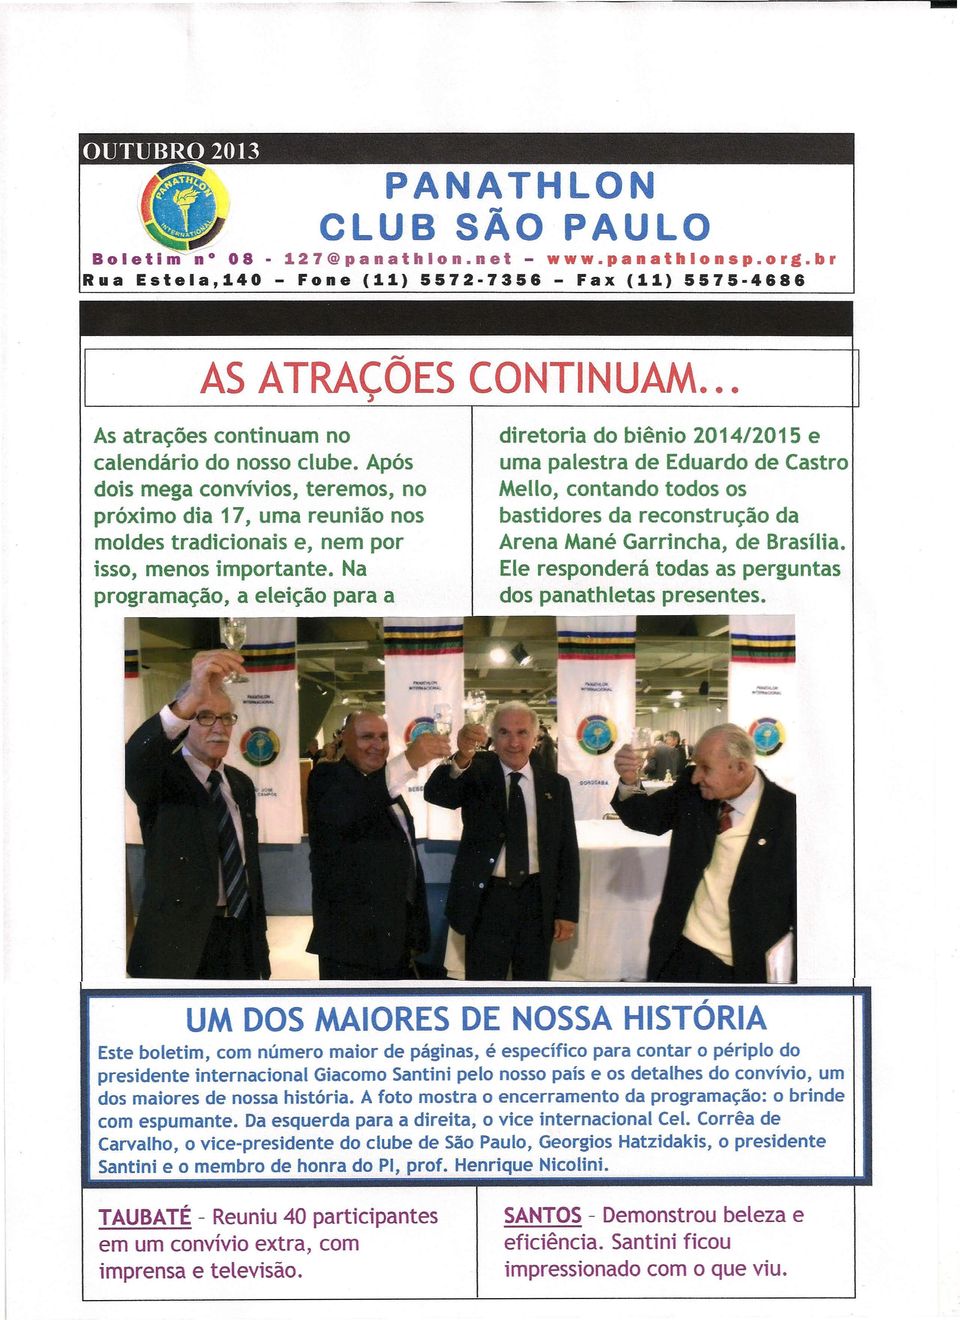 Na programação, a eleição para a diretoria do biênio 2014/2015 e uma palestra de Eduardo de Castro Mello, contando todos os bastidores da reconstrução da Arena Mané Garrincha, de Brasilia.